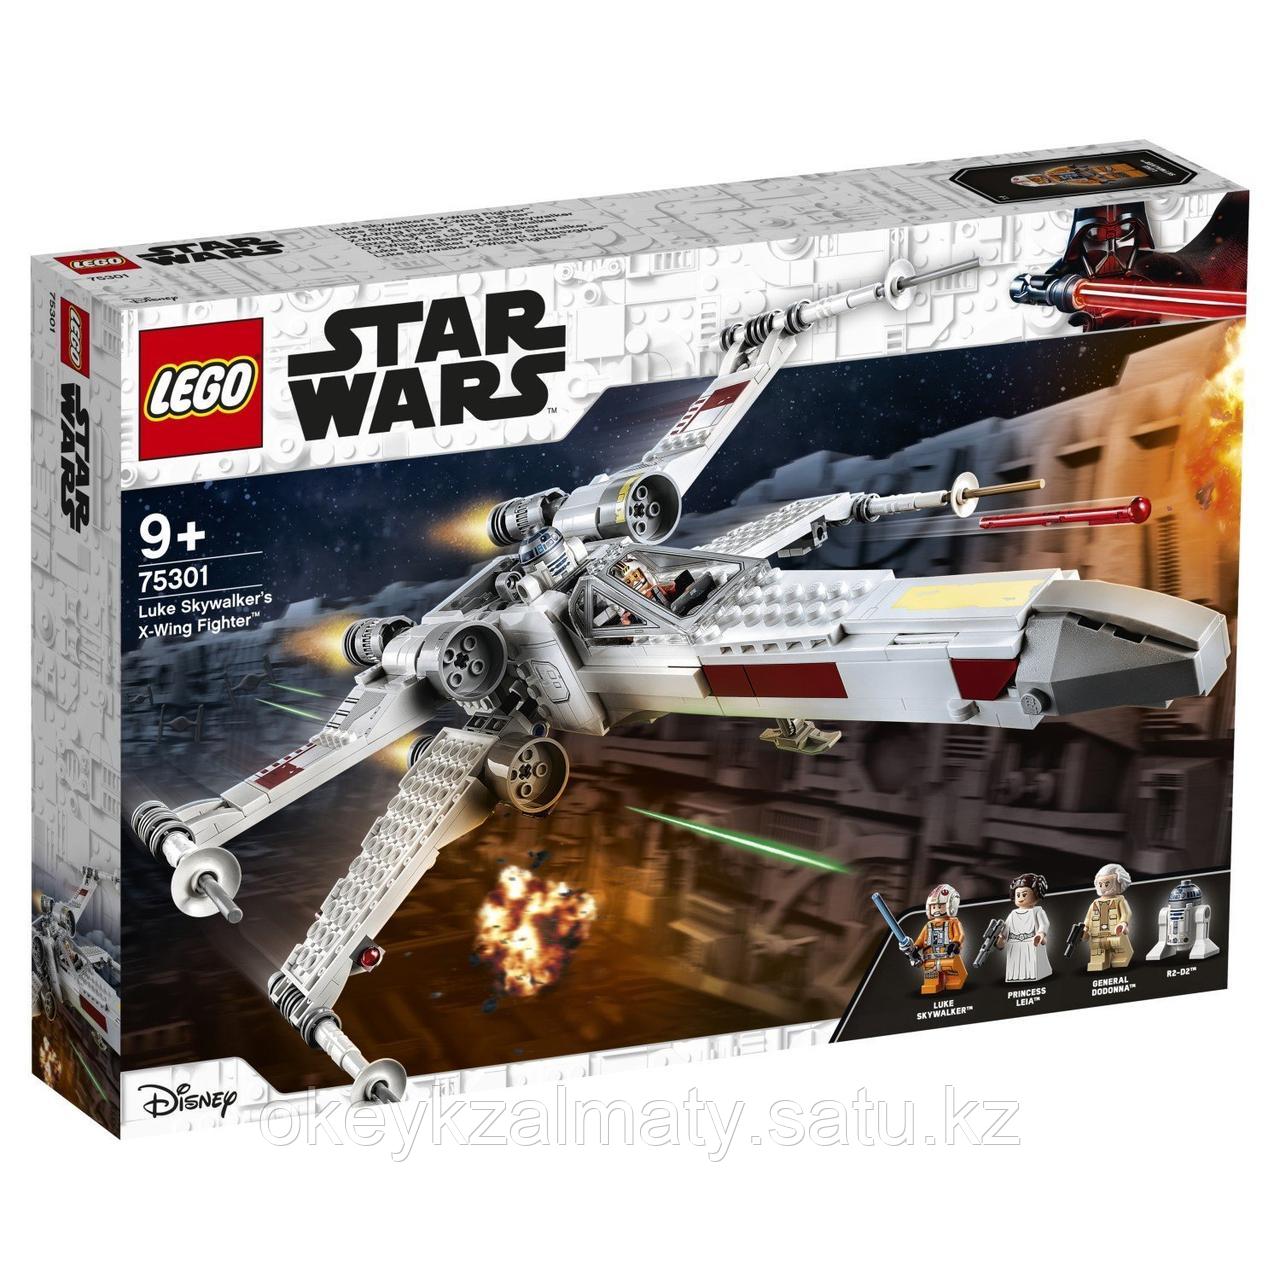 LEGO Star Wars: Истребитель типа Х Люка Скайуокера 75301